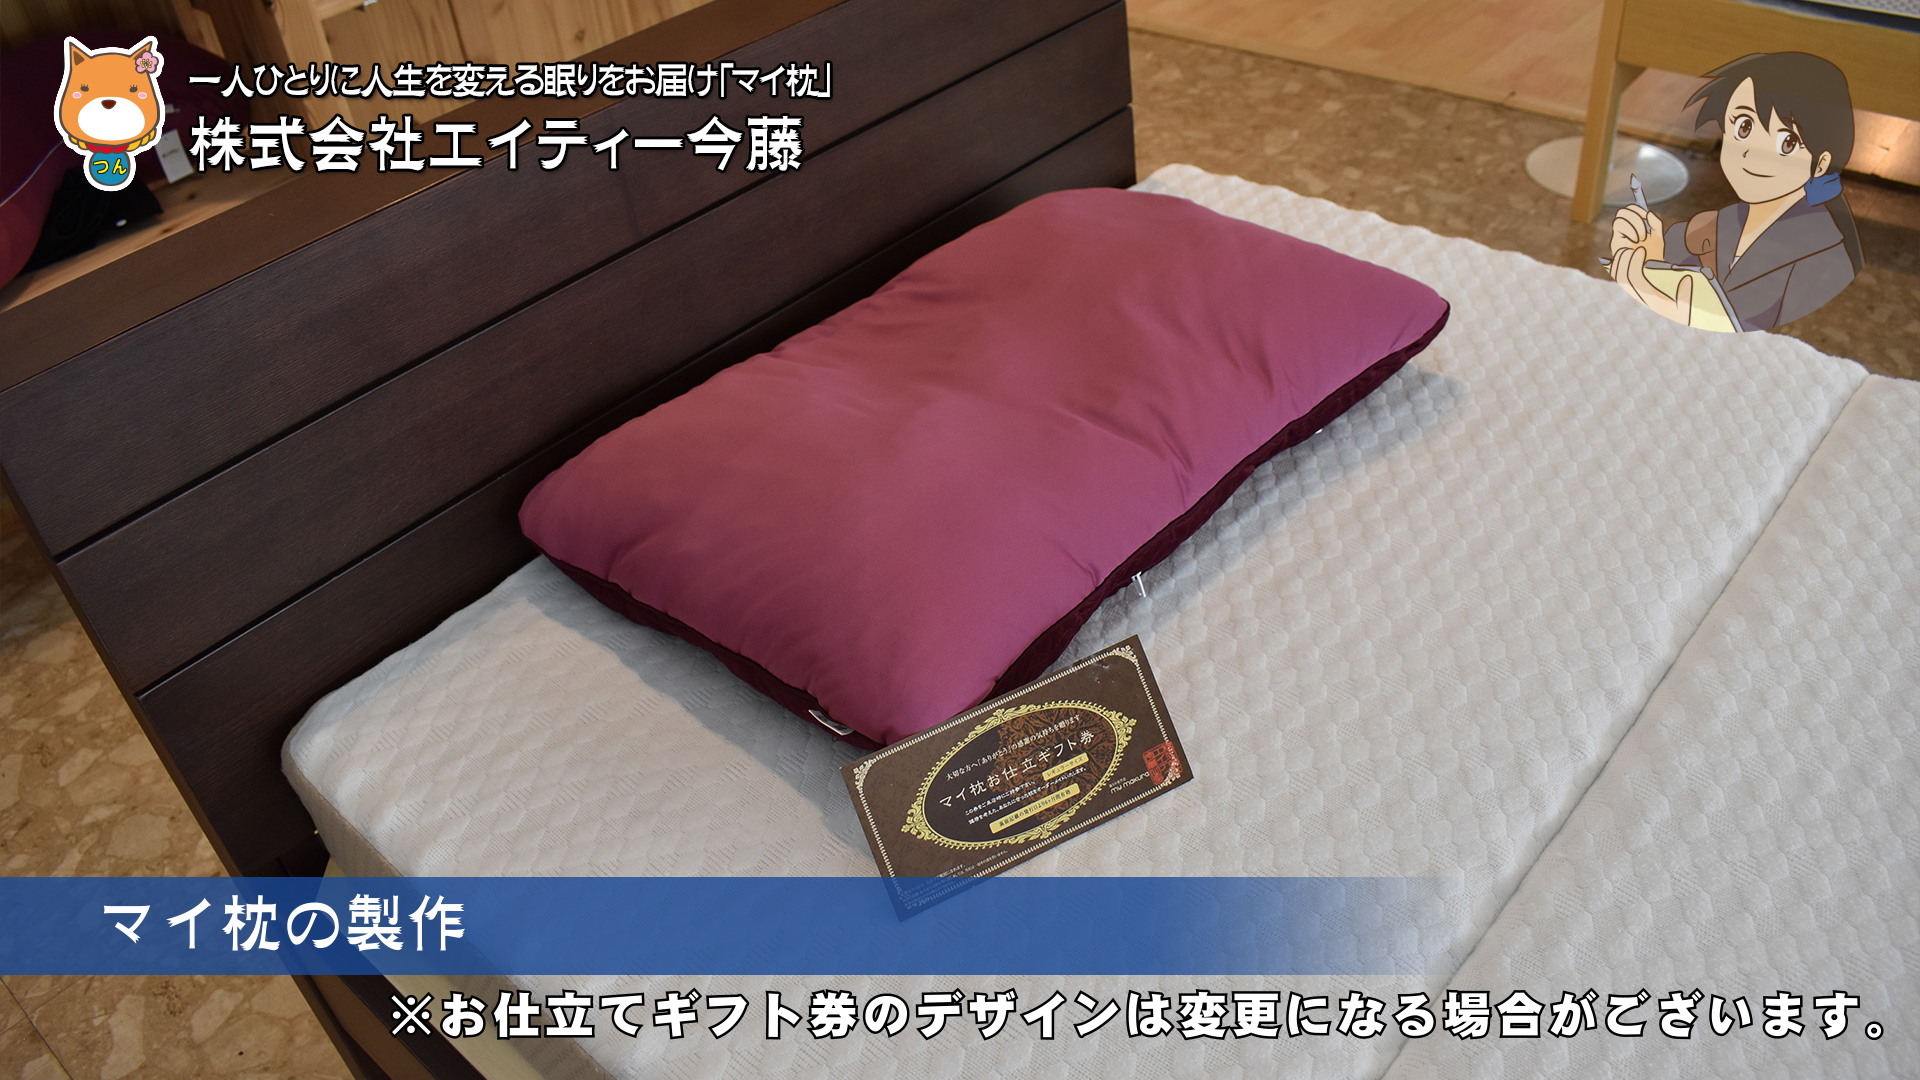 マイ枕の製作